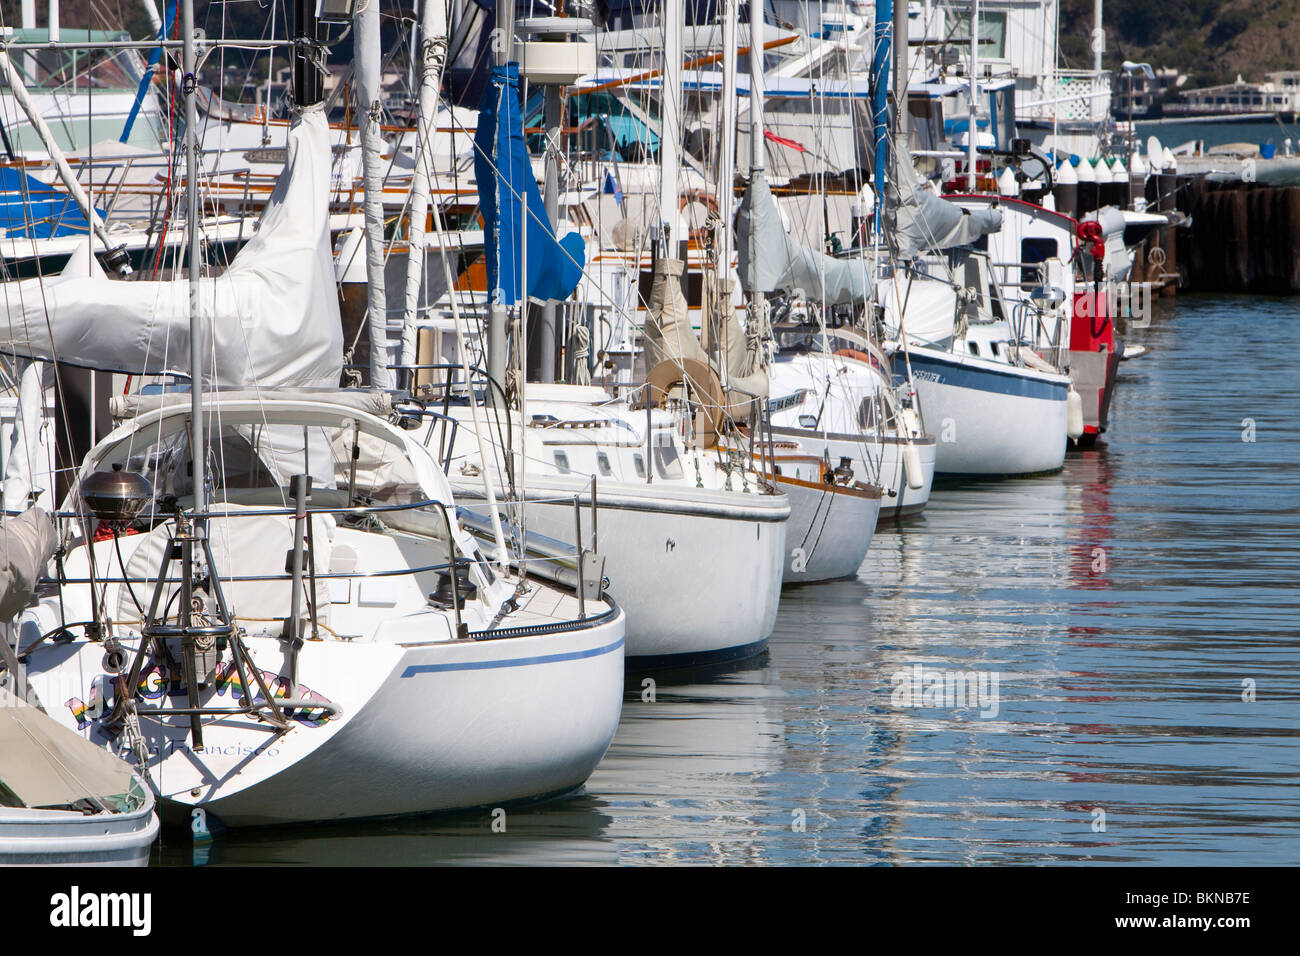 Sailboats docked in Sausalito, California. Stock Photo